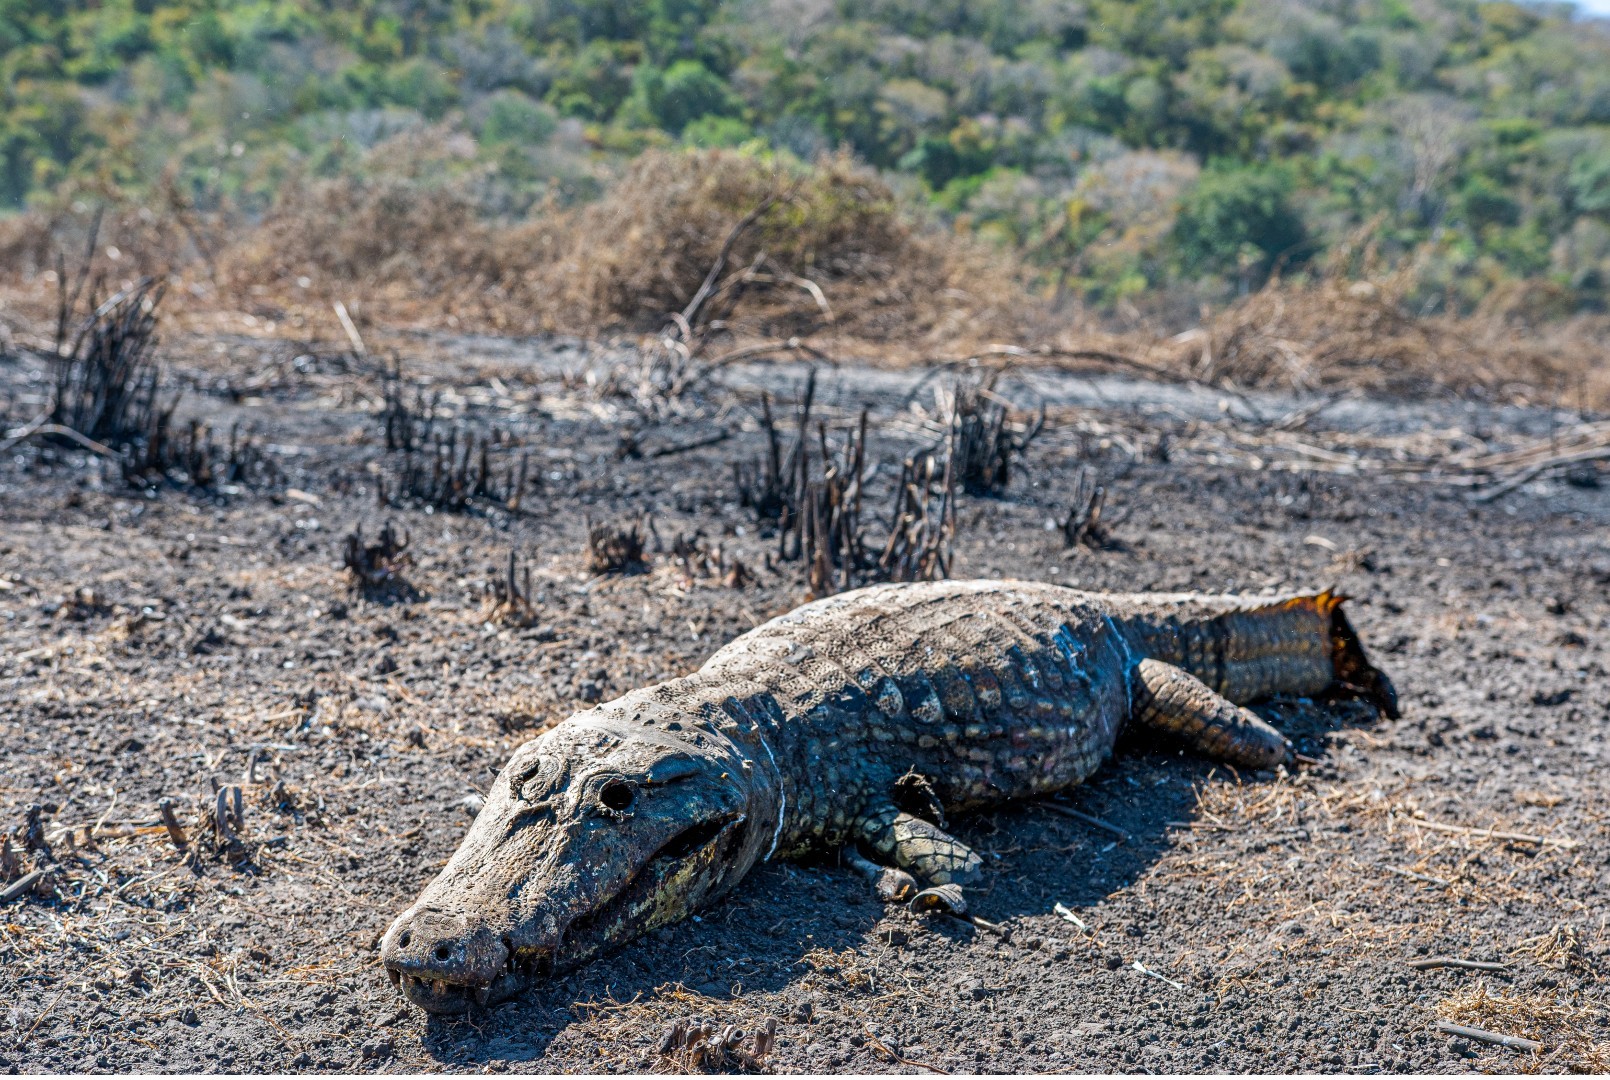 O rastro de destruição no Pantanal: jacaré carbonizado, carcaças expostas e vegetação cinza